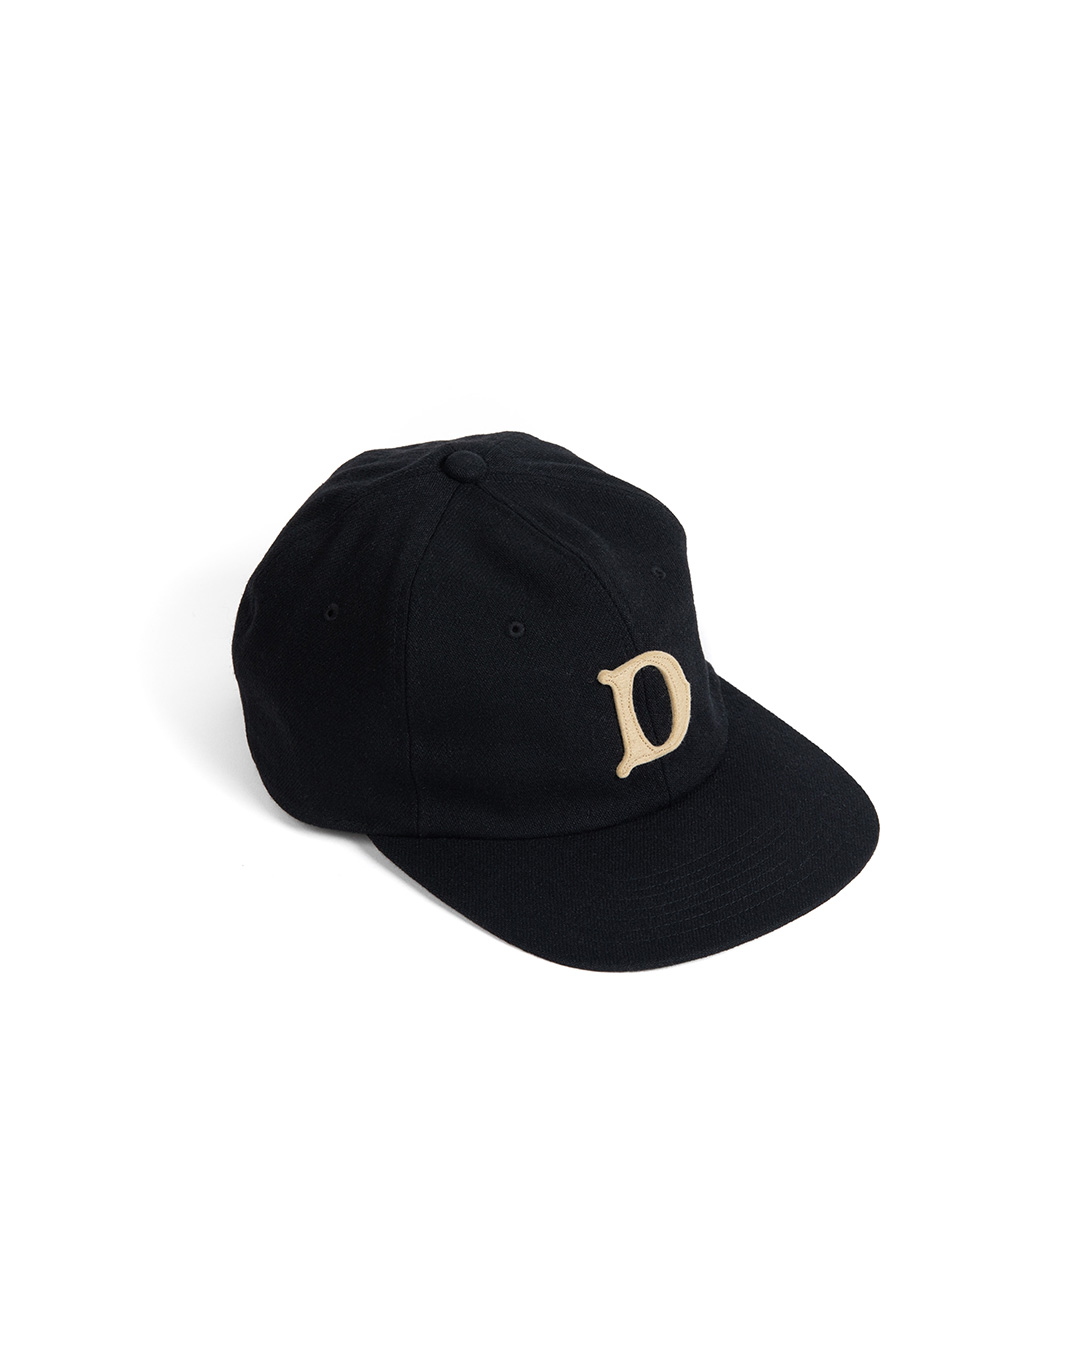 BASEBALL CAP (black)